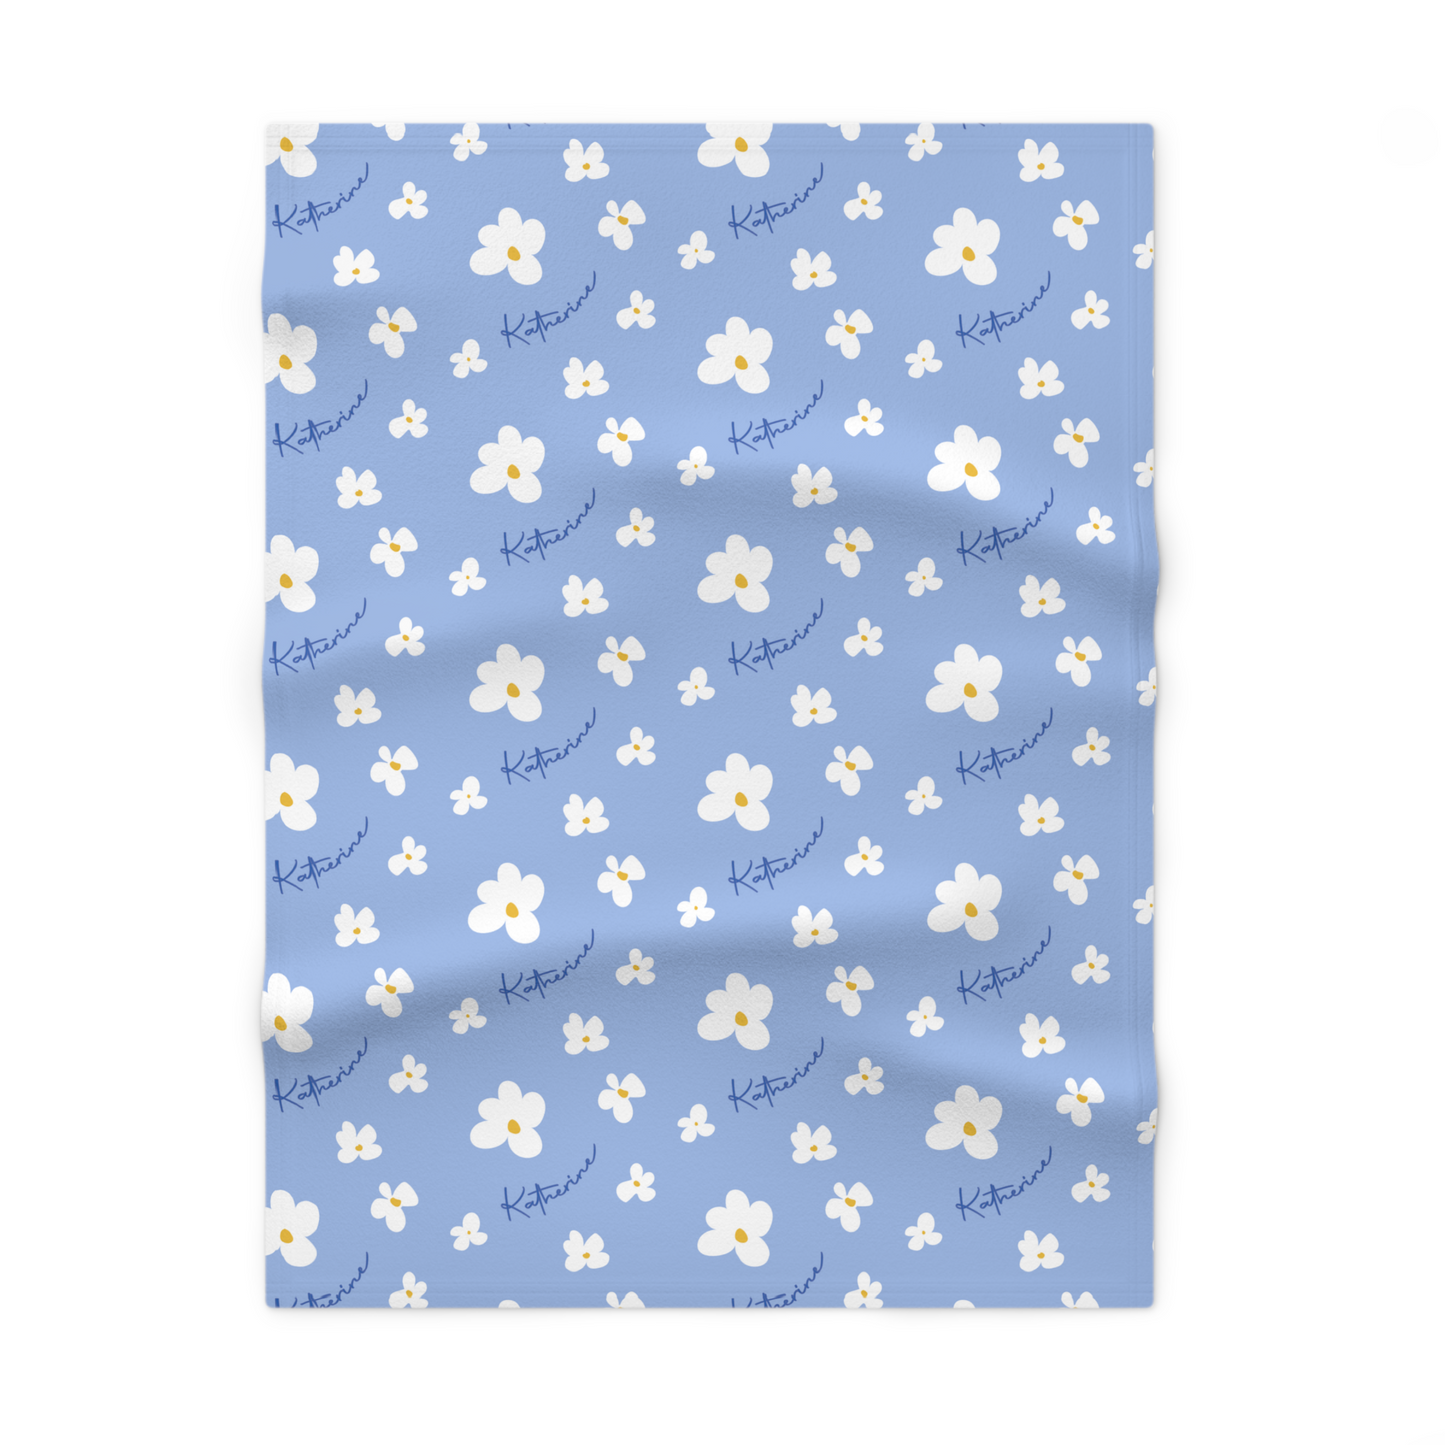 Fleece personalized baby blanket in blue daisy pattern laid flat